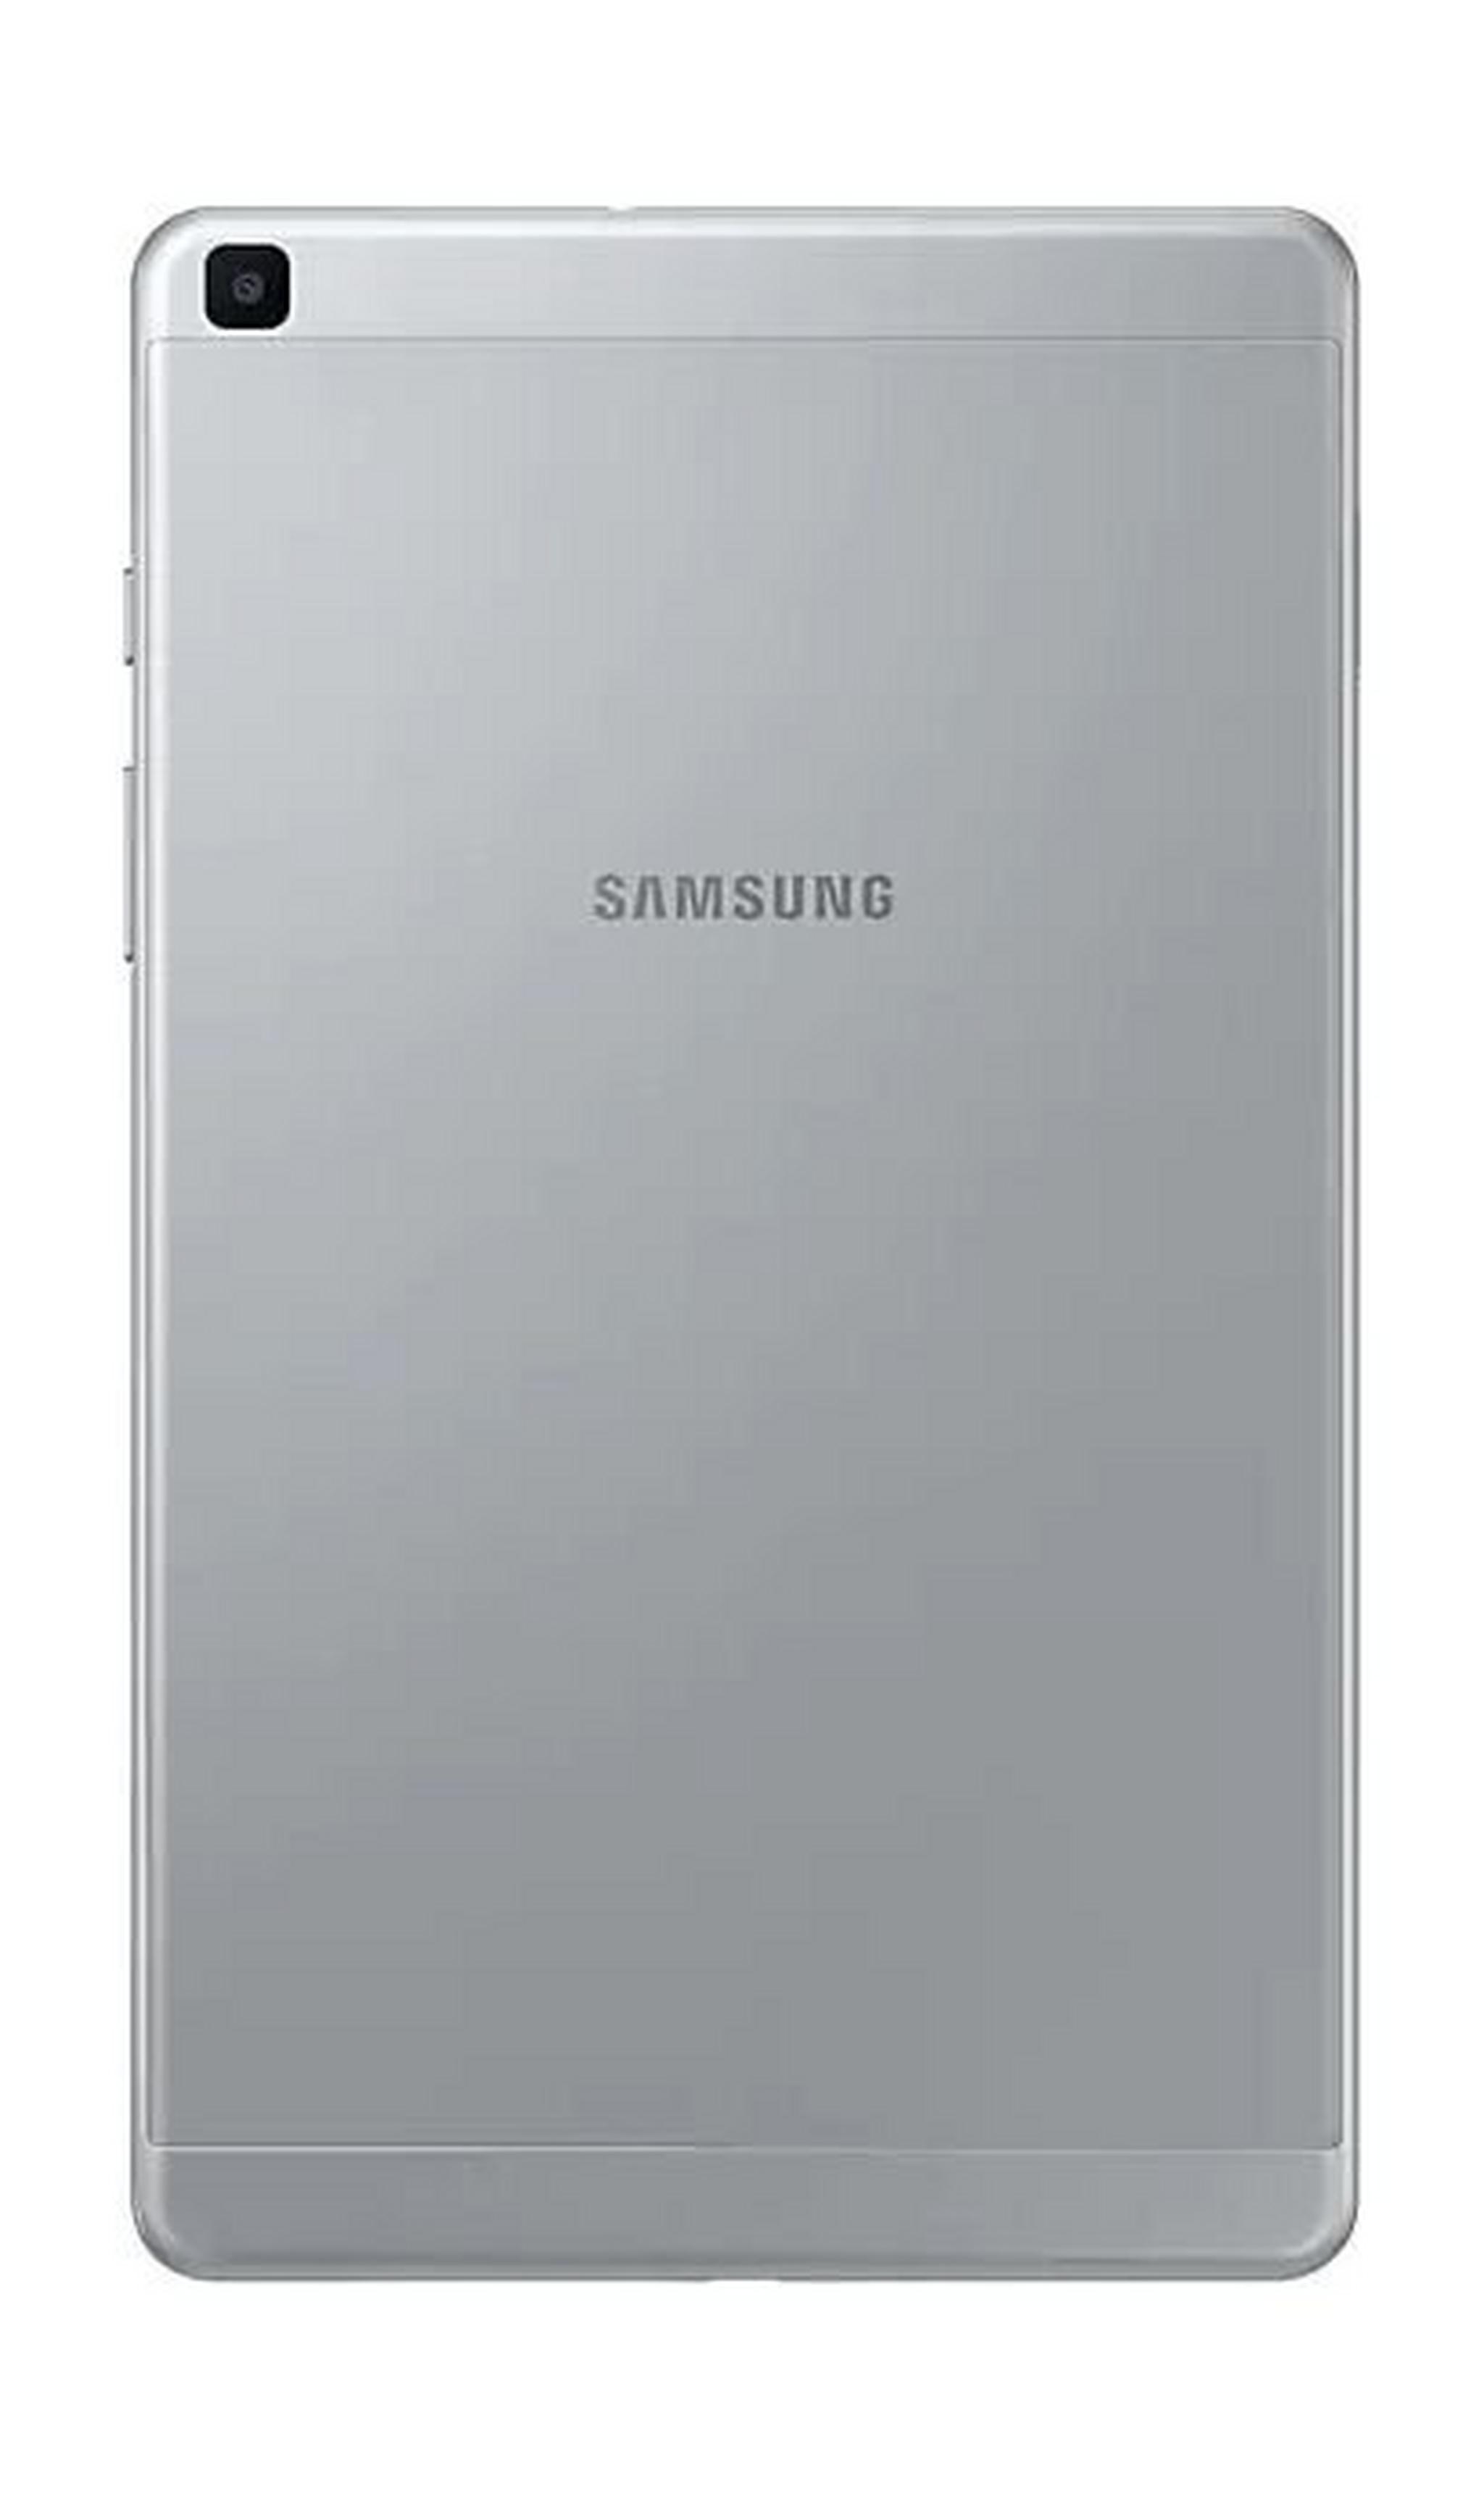 SAMSUNG Galaxy Tab A 2019 8-inch 32GB Wi-Fi Only Tablet - Silver